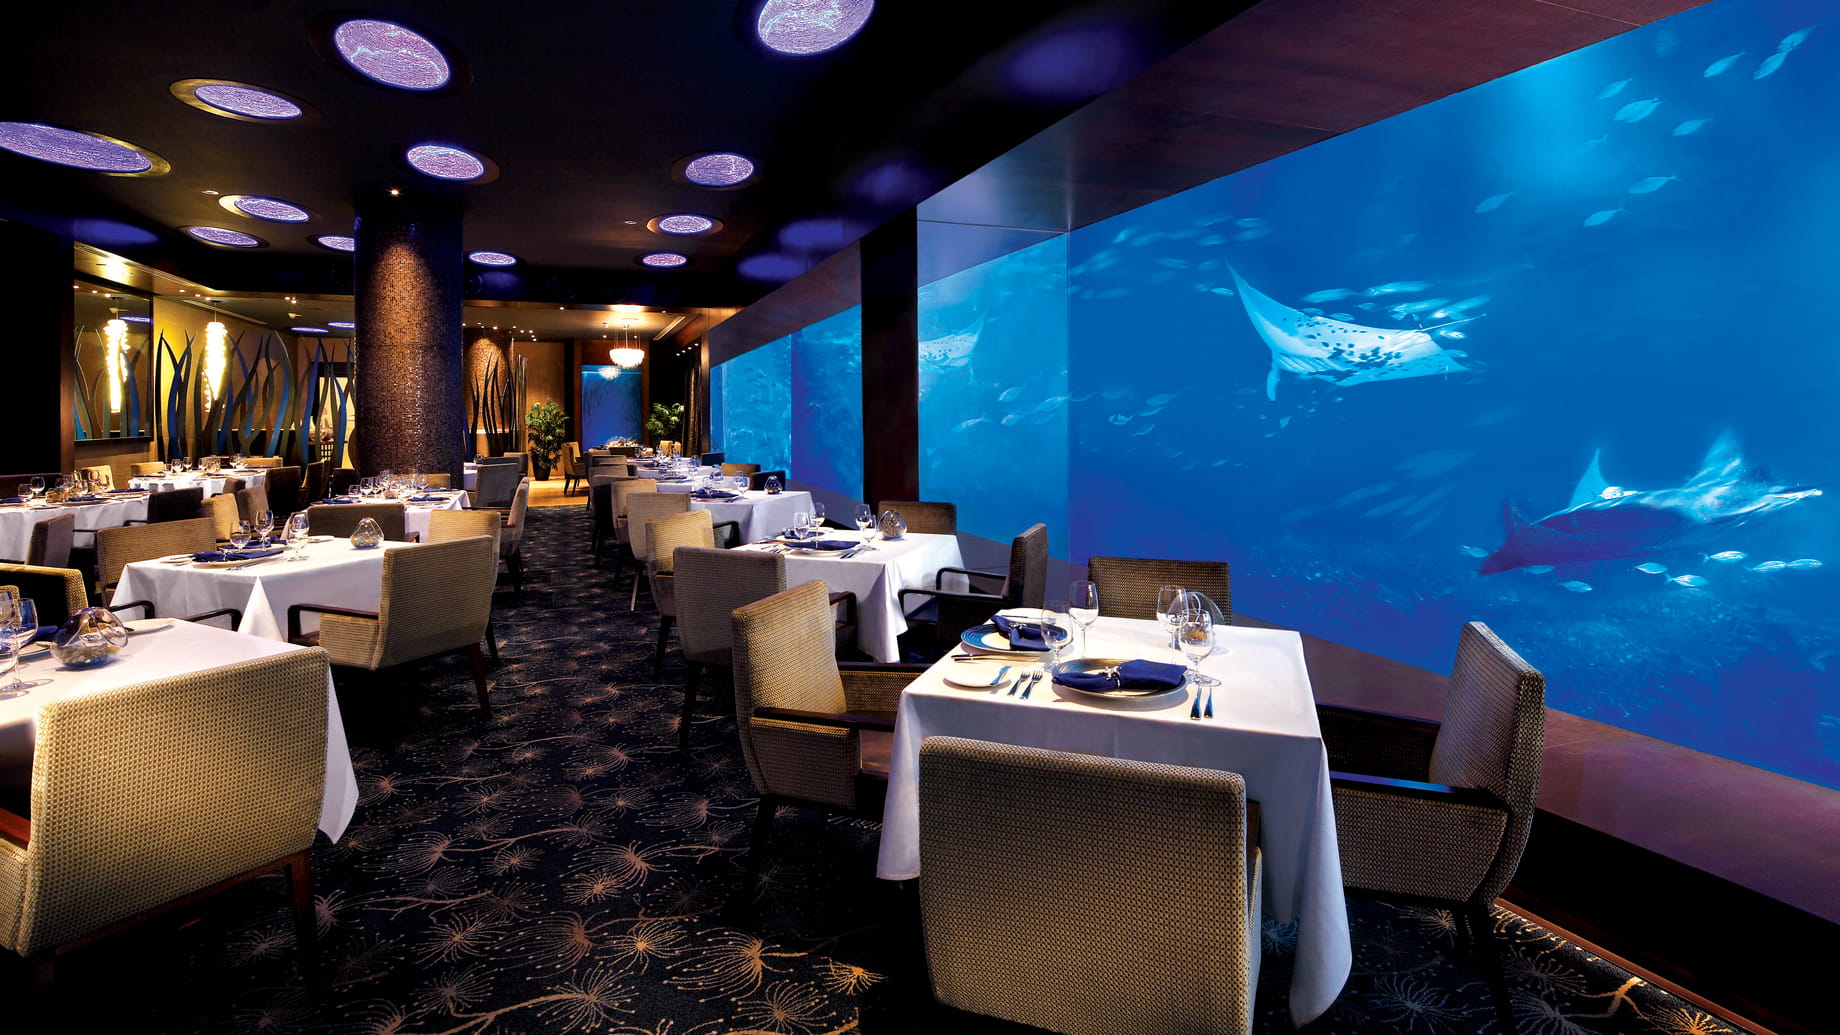 ocean casino resort restaurants